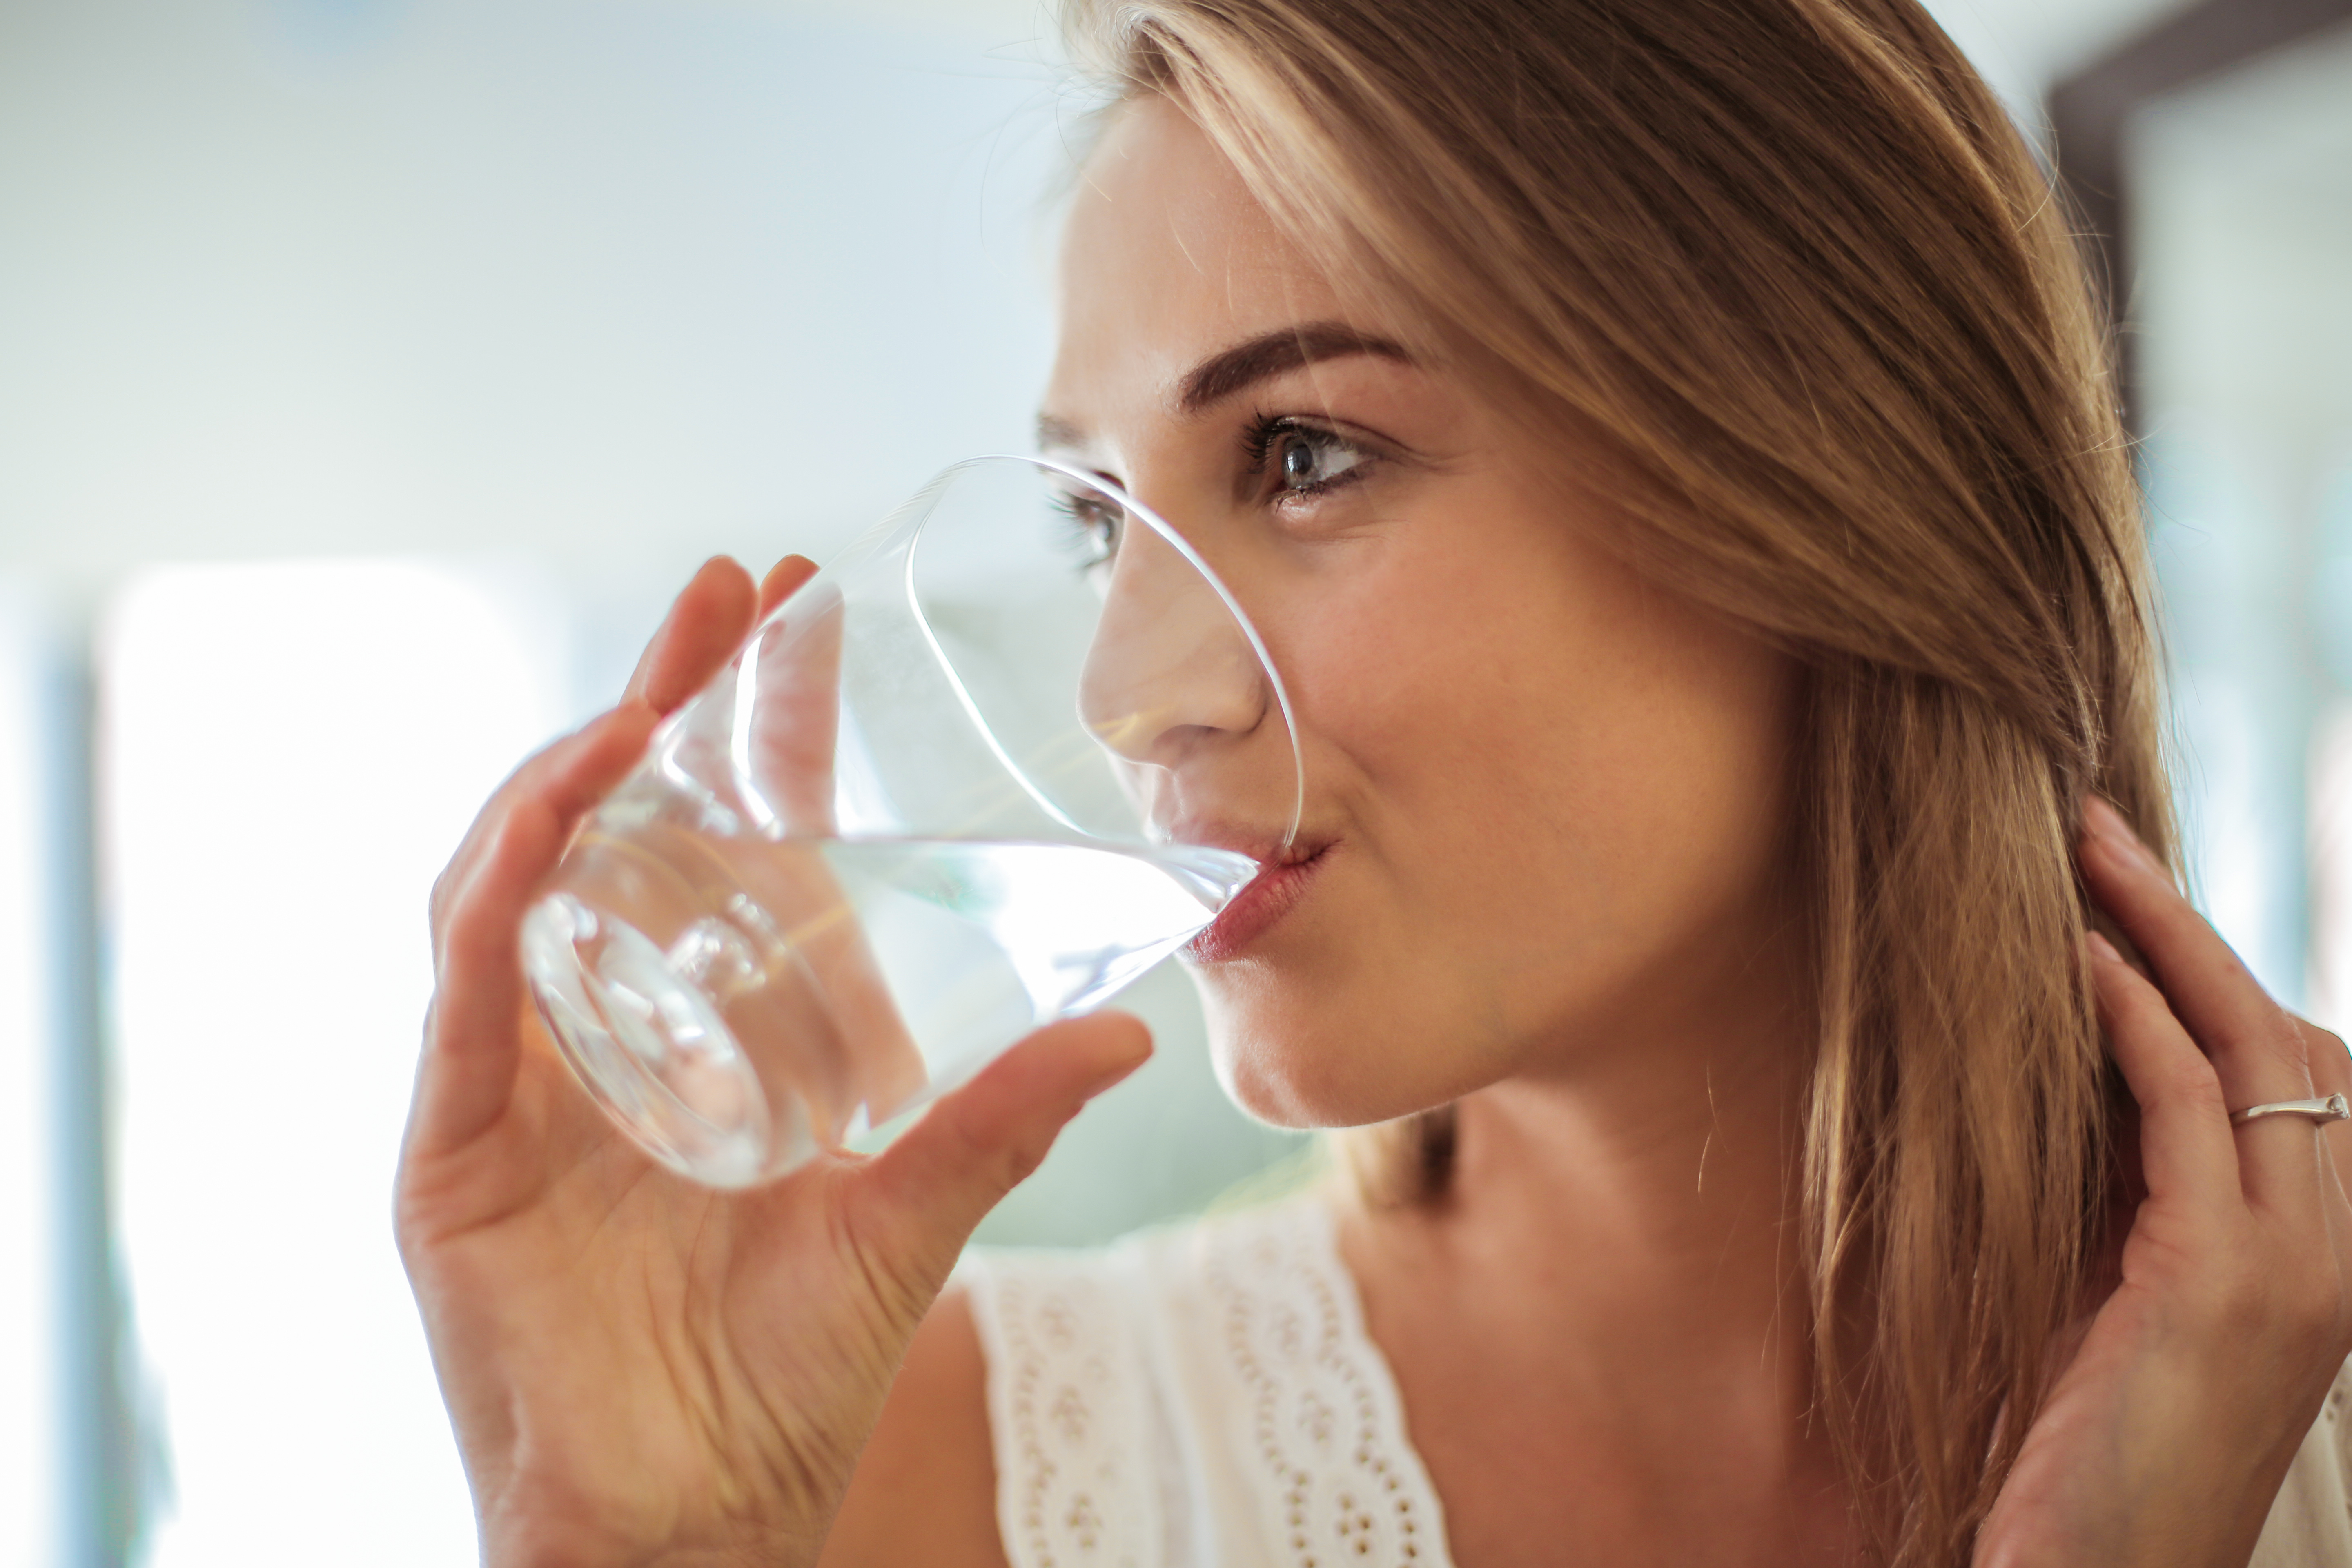 Пейте легкую воду. Стакан воды. Пить воду. Девушка пьет воду. Женщина пьет воду из стакана.